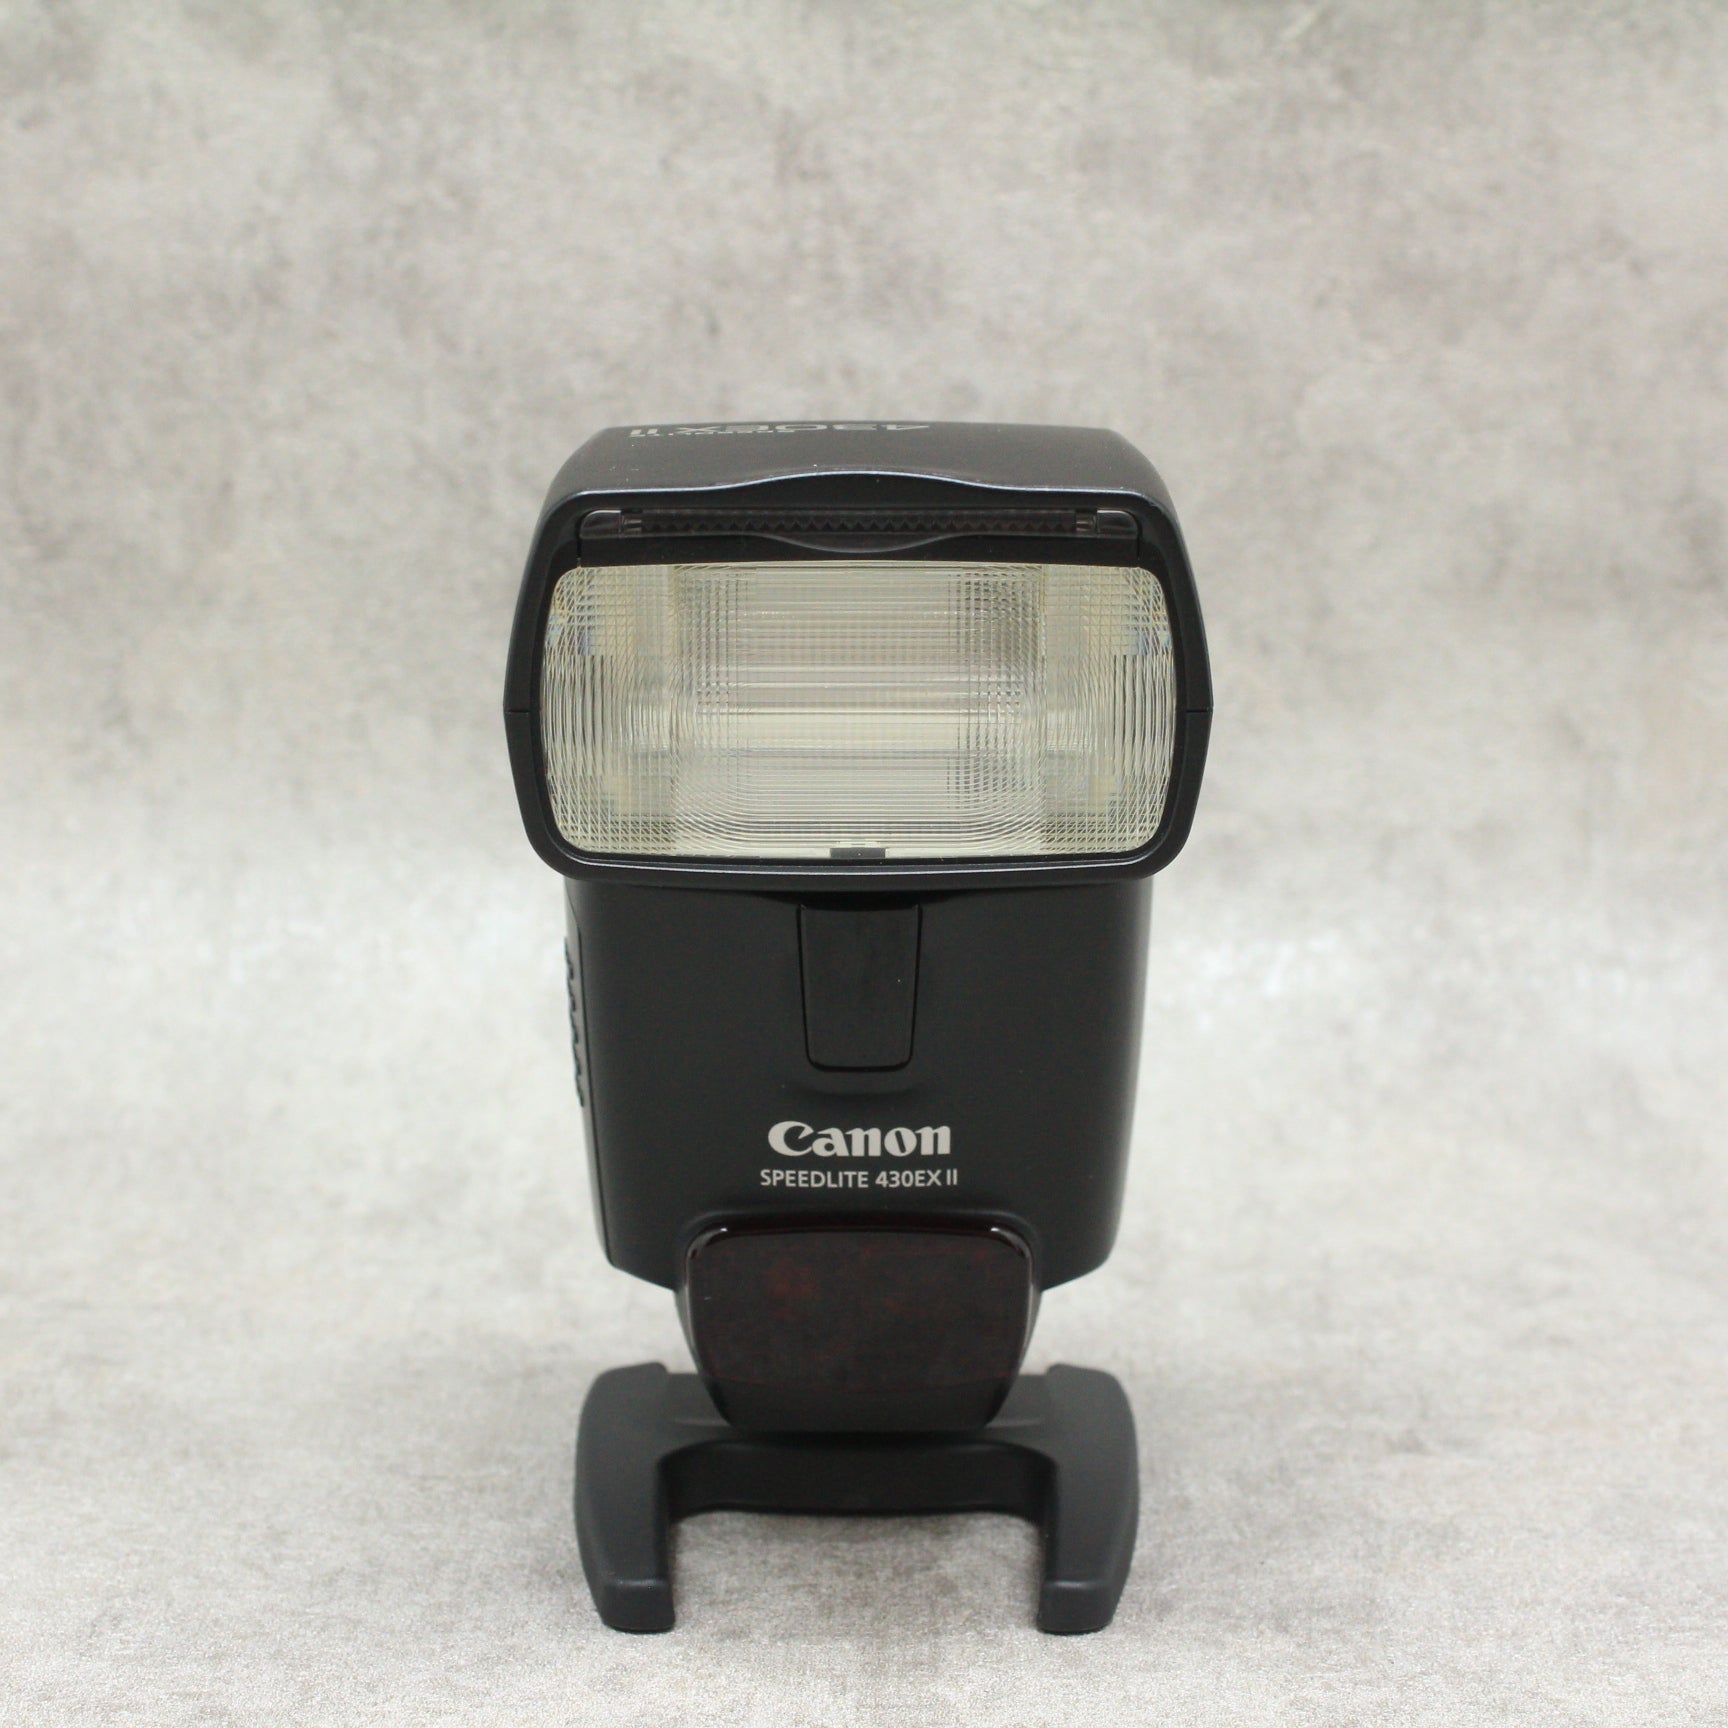 キヤノン Canon フラッシュ スピードライト 430EX II SP430EX2 【67%OFF!】 -  カメラ・ビデオカメラ・光学機器用アクセサリー